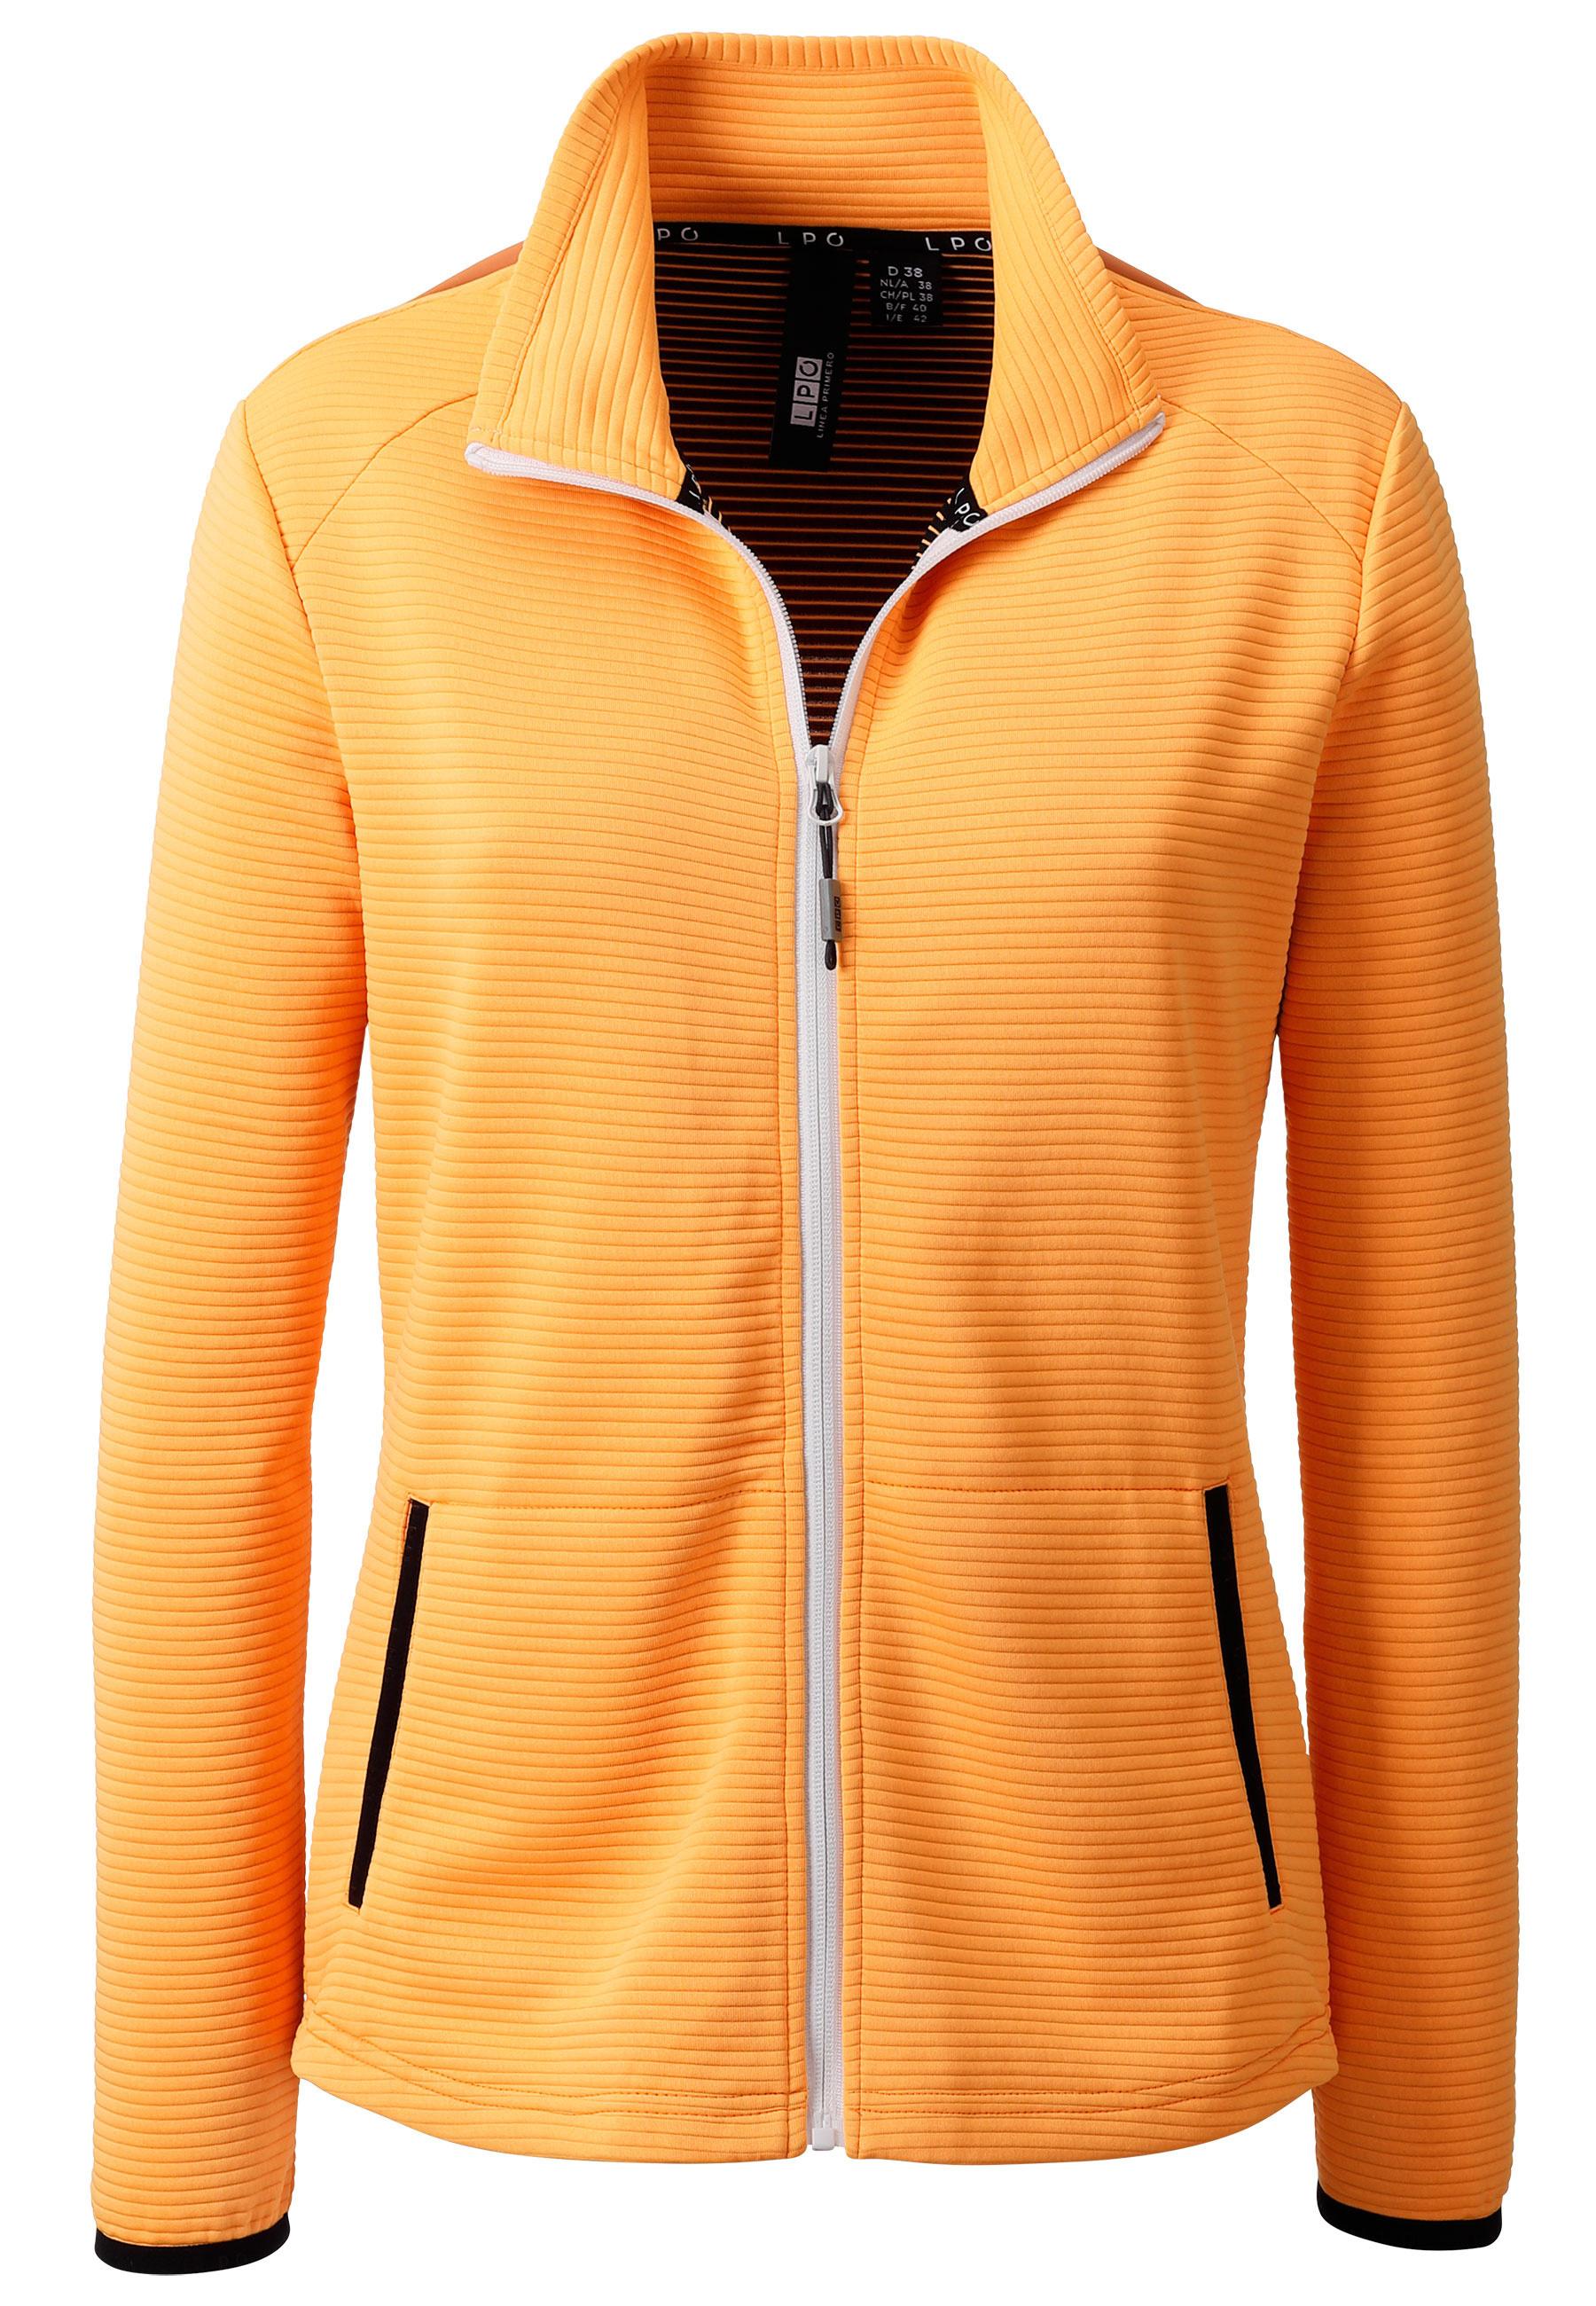 LPO Fleecejacke Damen orange im Online Shop von SportScheck kaufen